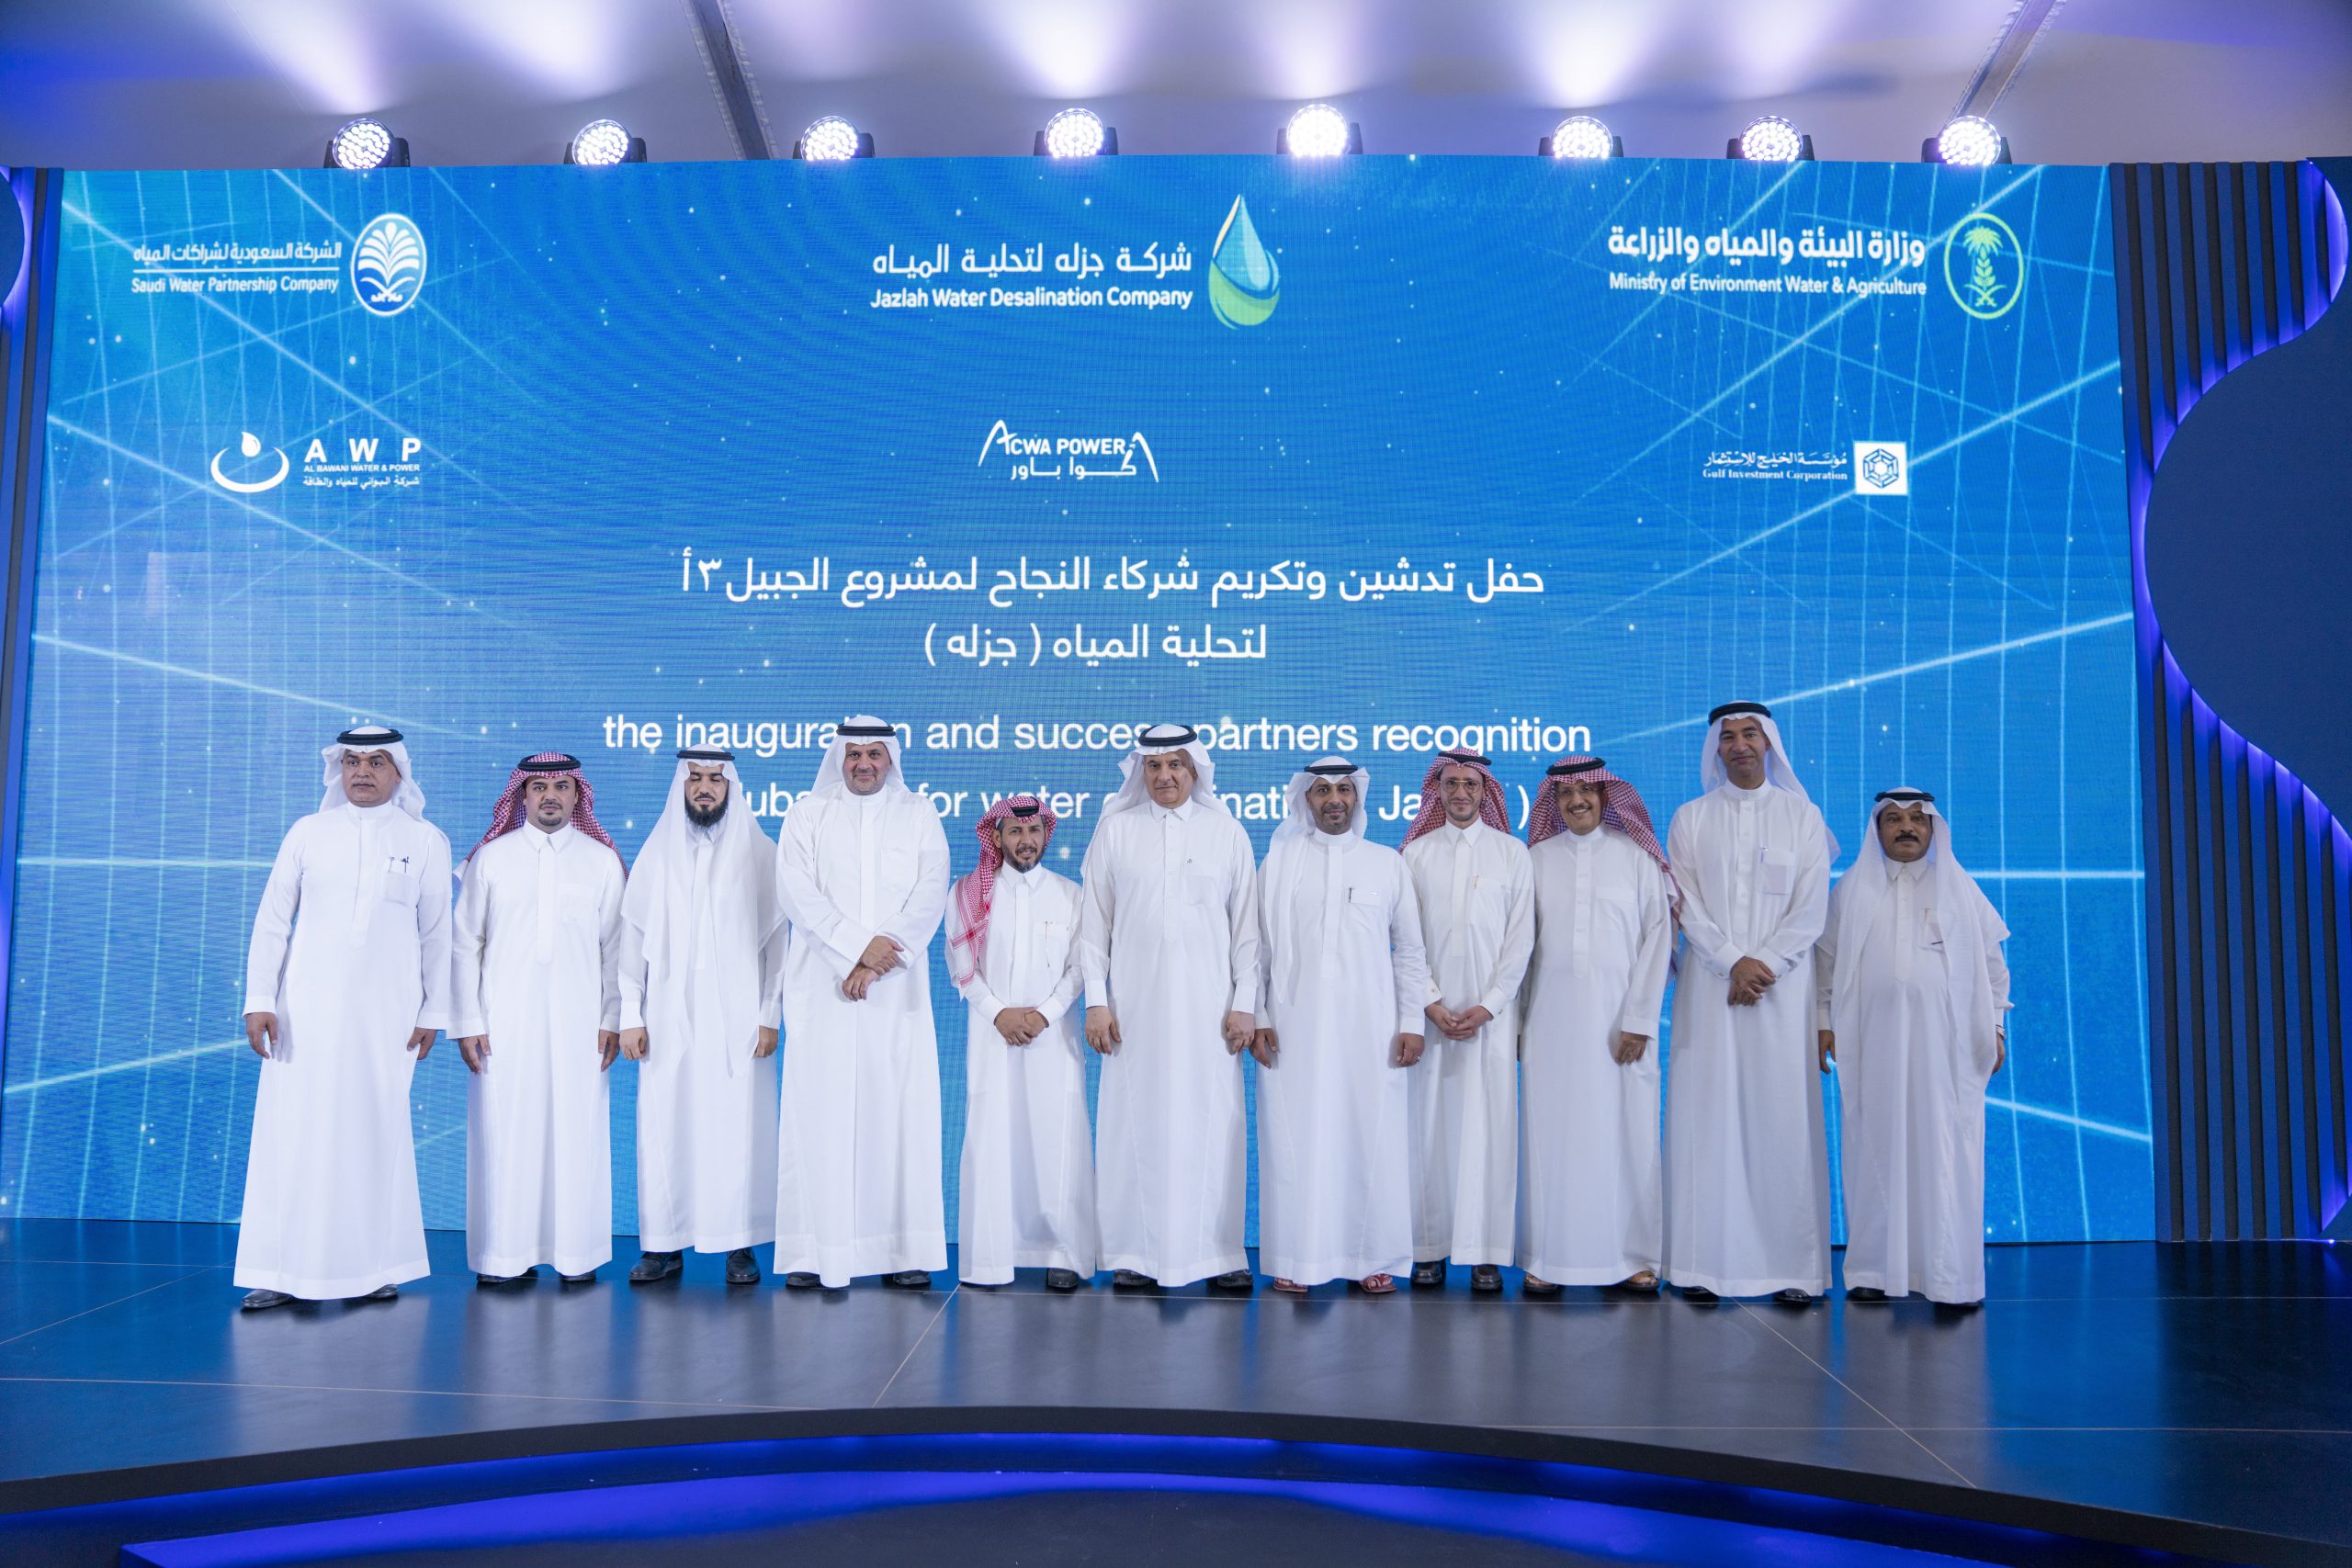 جانب من حفل افتتاح أول مشروع لتحلية المياه بالطاقة الشمسية الكهروضوئية في السعودية